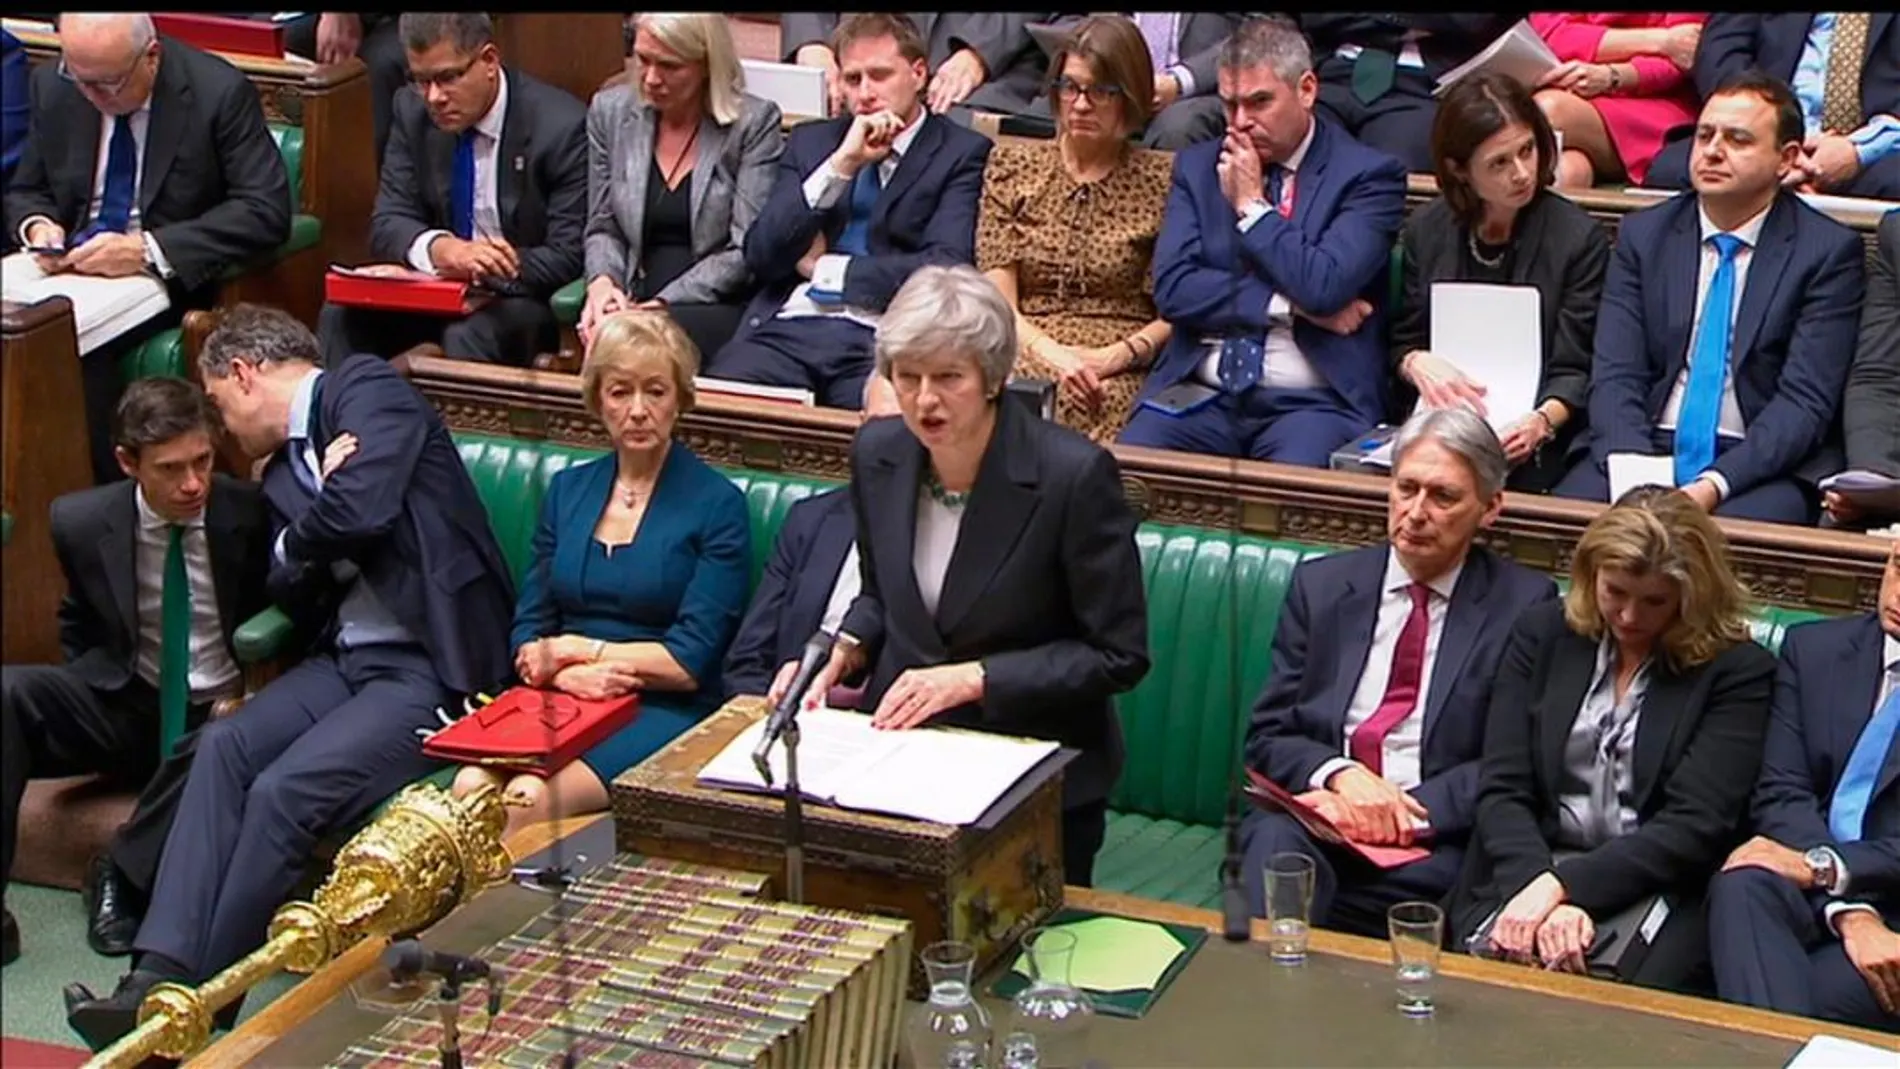 La primera ministra británica Theresa May habla en la Cámara de los Comunes. Parbul TV/Handout via Reuters TV